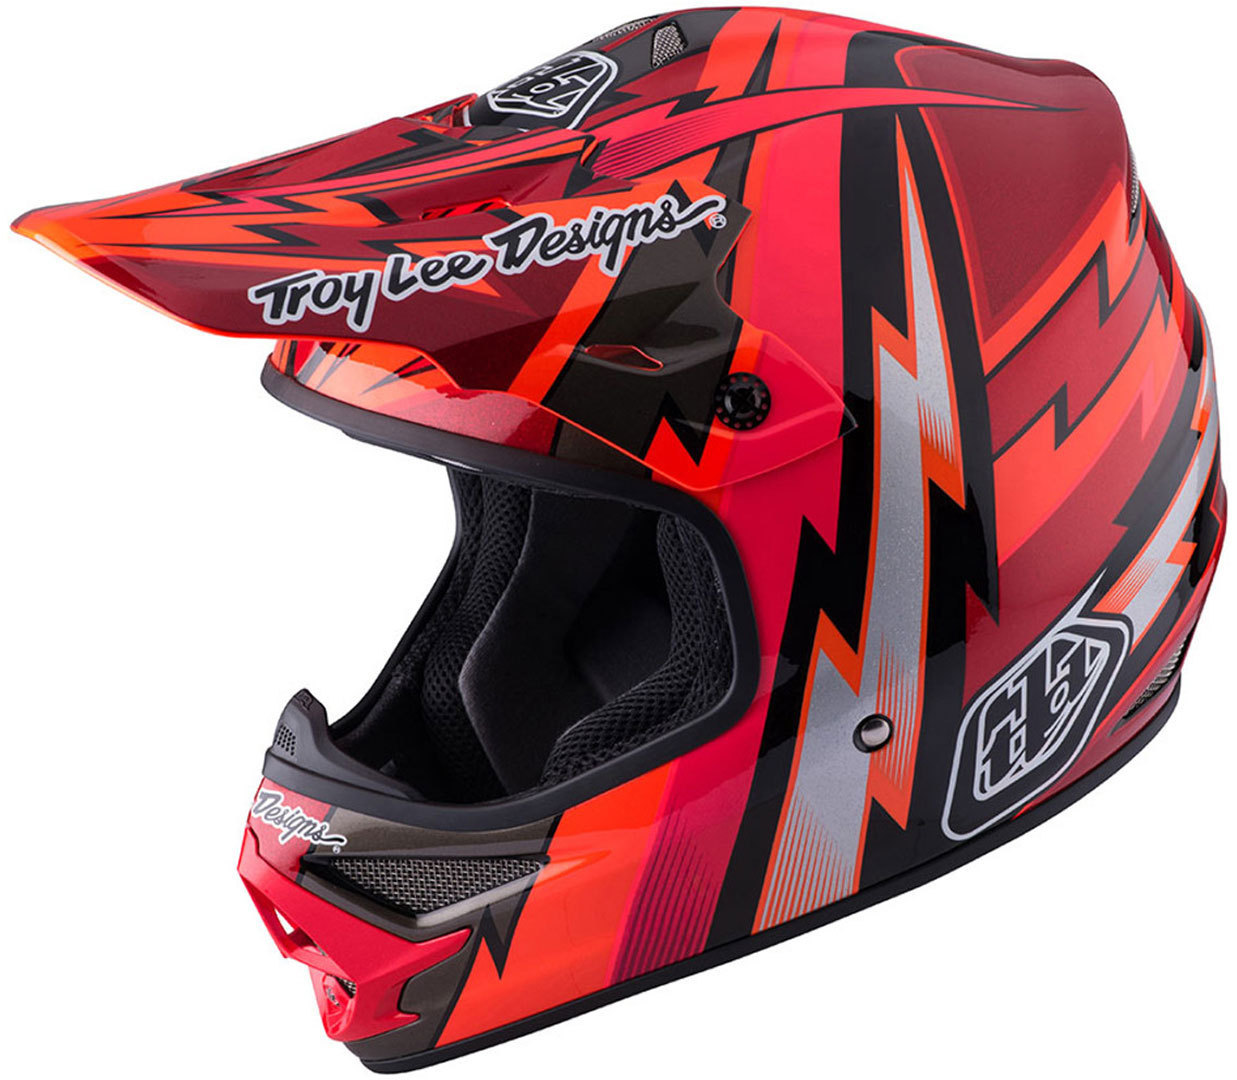 Шлем Troy Lee Designs Air Beams мотоциклетный, красный мотоциклетный шлем шлем с подсолнухом